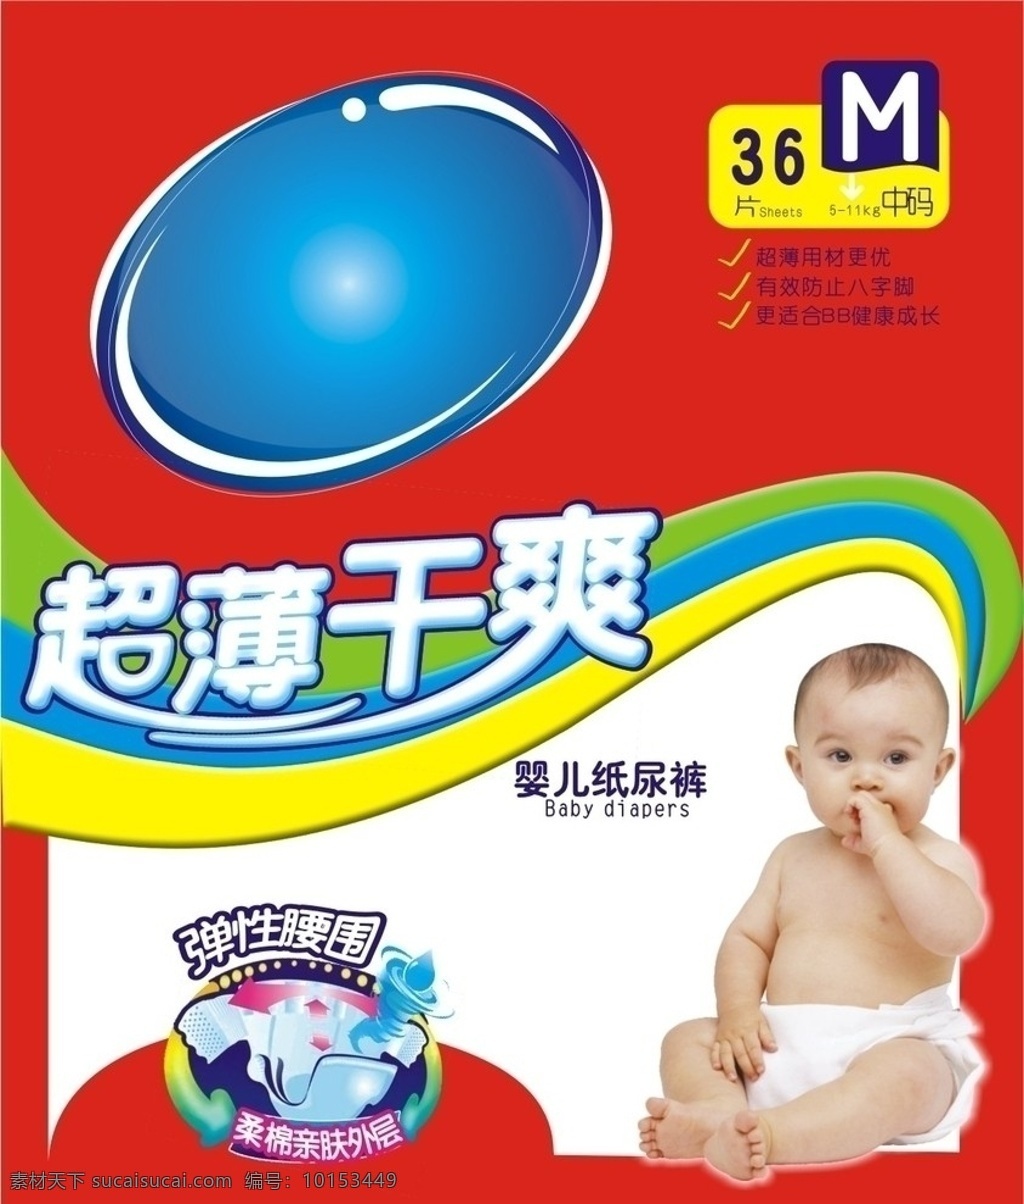 纸尿裤模板 纸尿裤 包装 商业包装 包装设计 婴儿 干爽 超薄 中码 码数 童趣 可爱 蓝色标题栏 市场 对比色 矢量